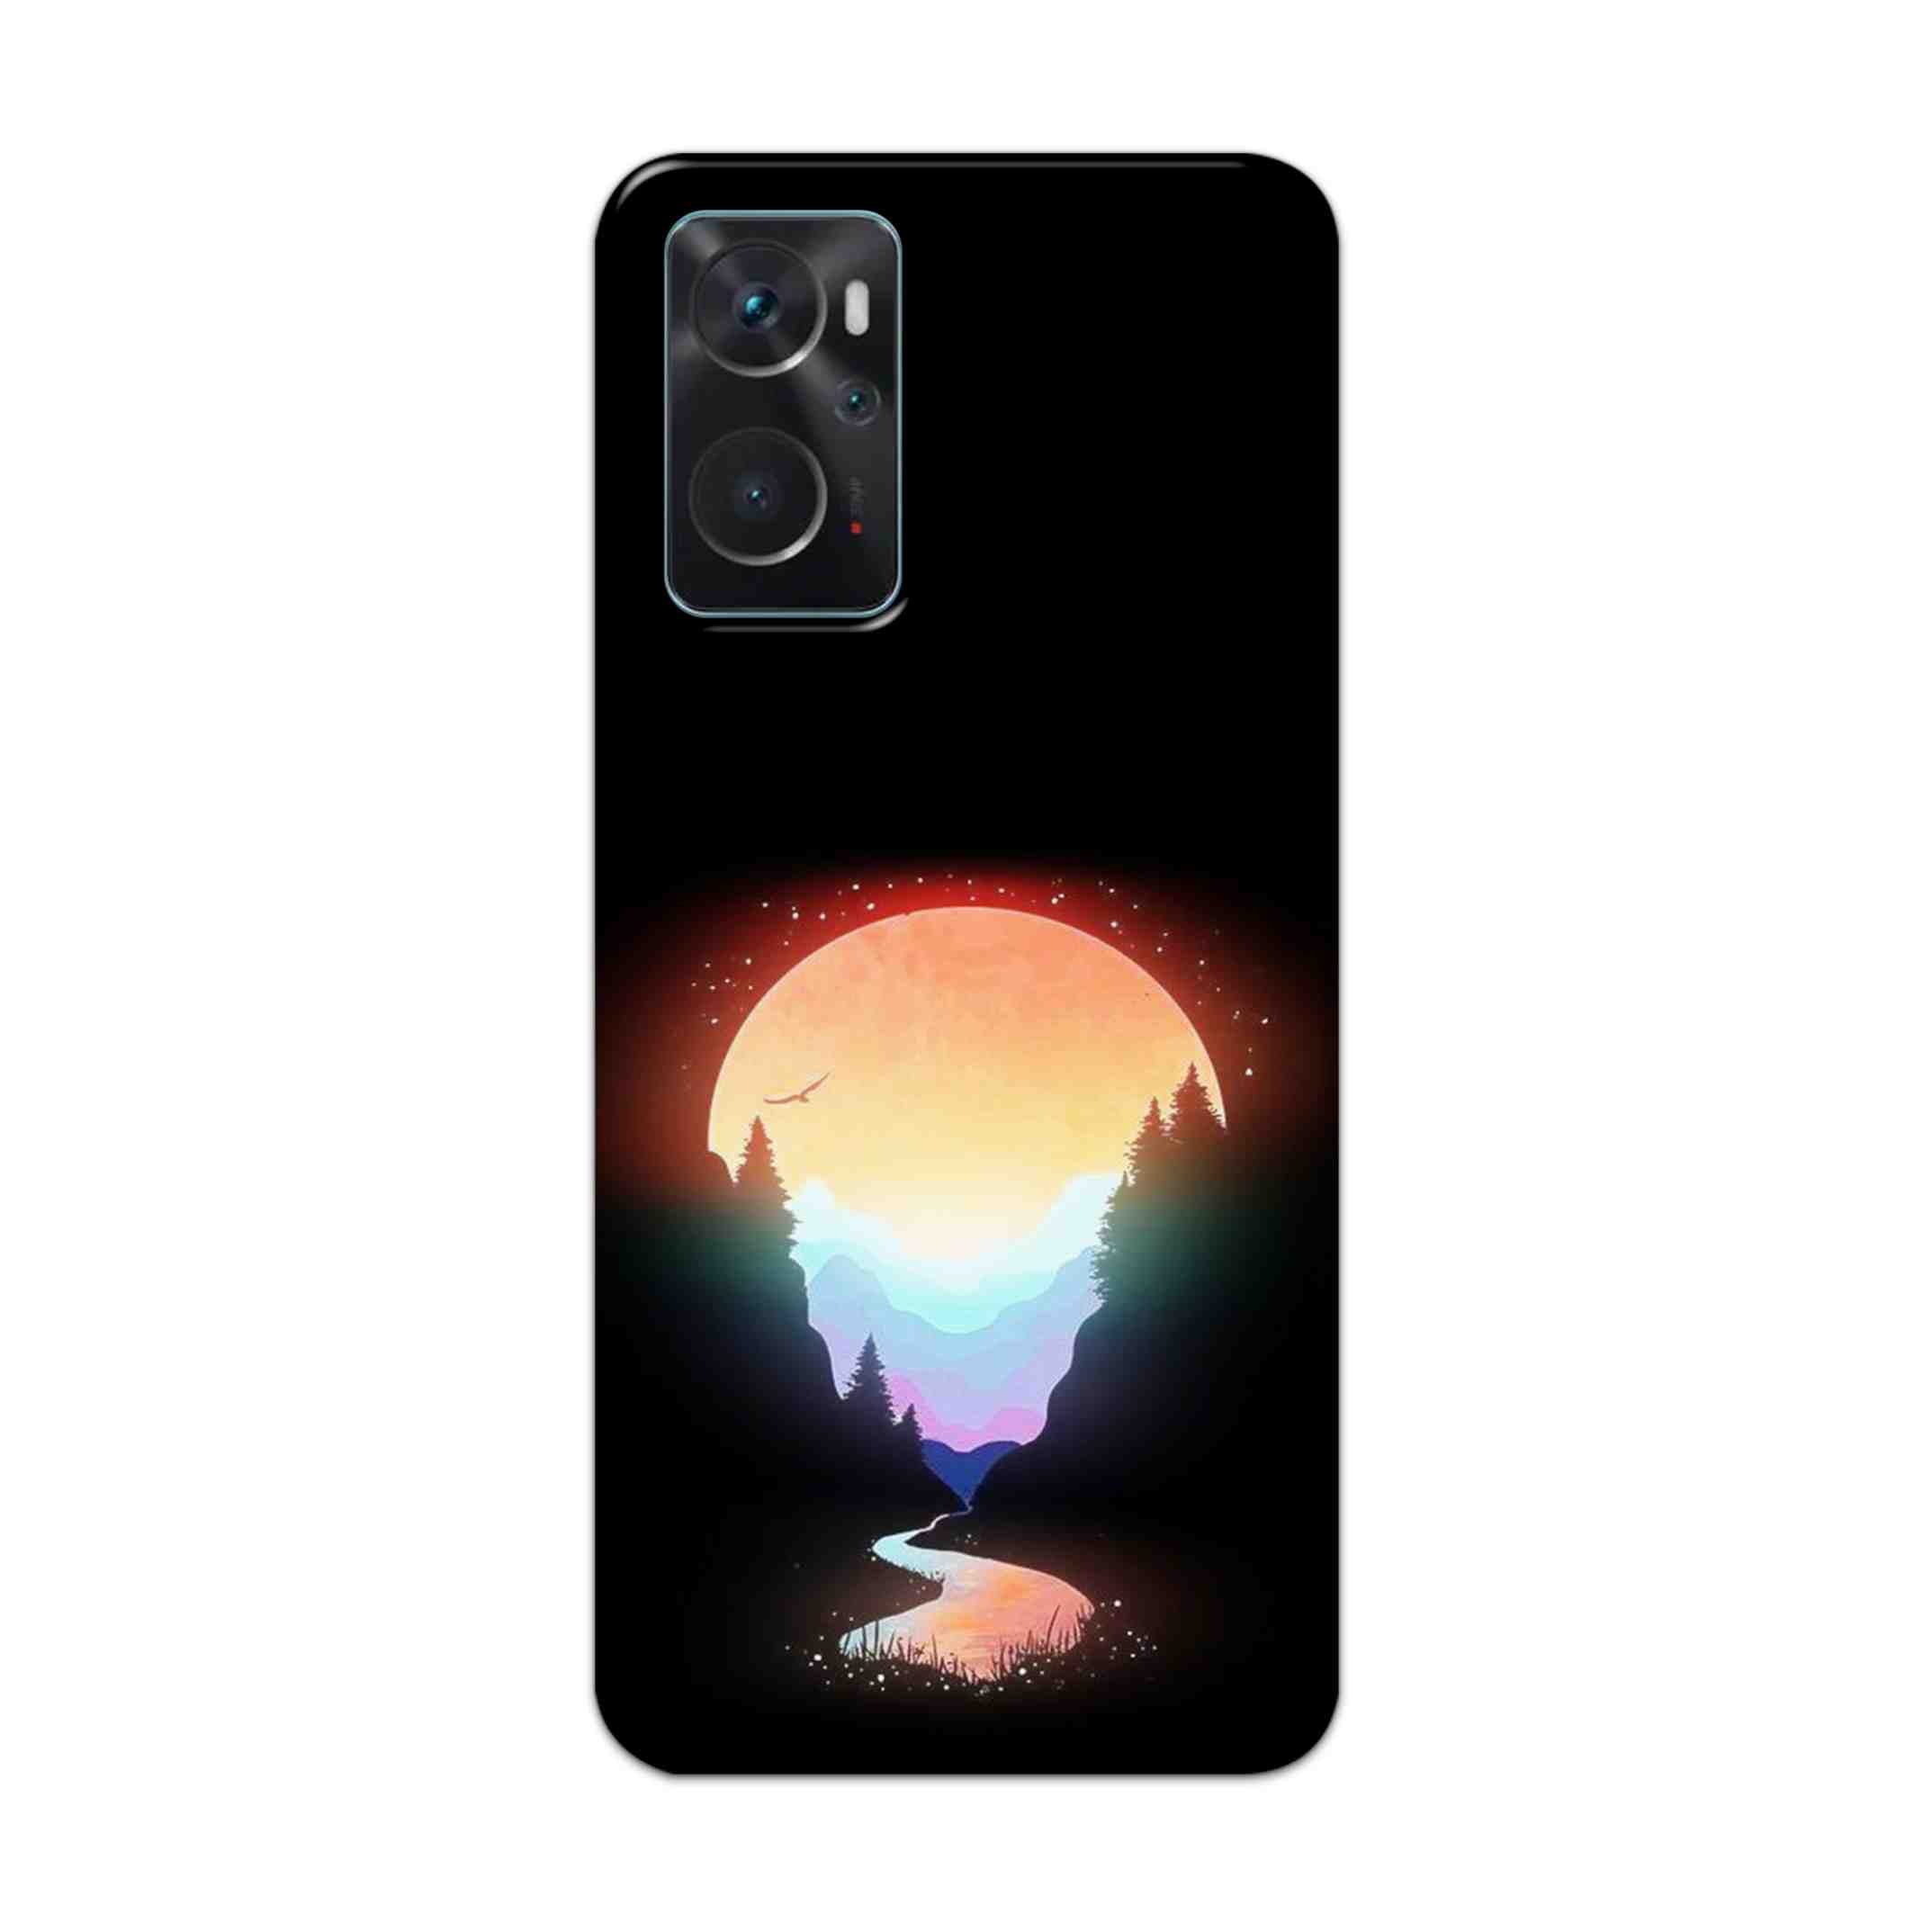 Buy Rainbow Hard Back Mobile Phone Case Cover For Oppo K10 Online